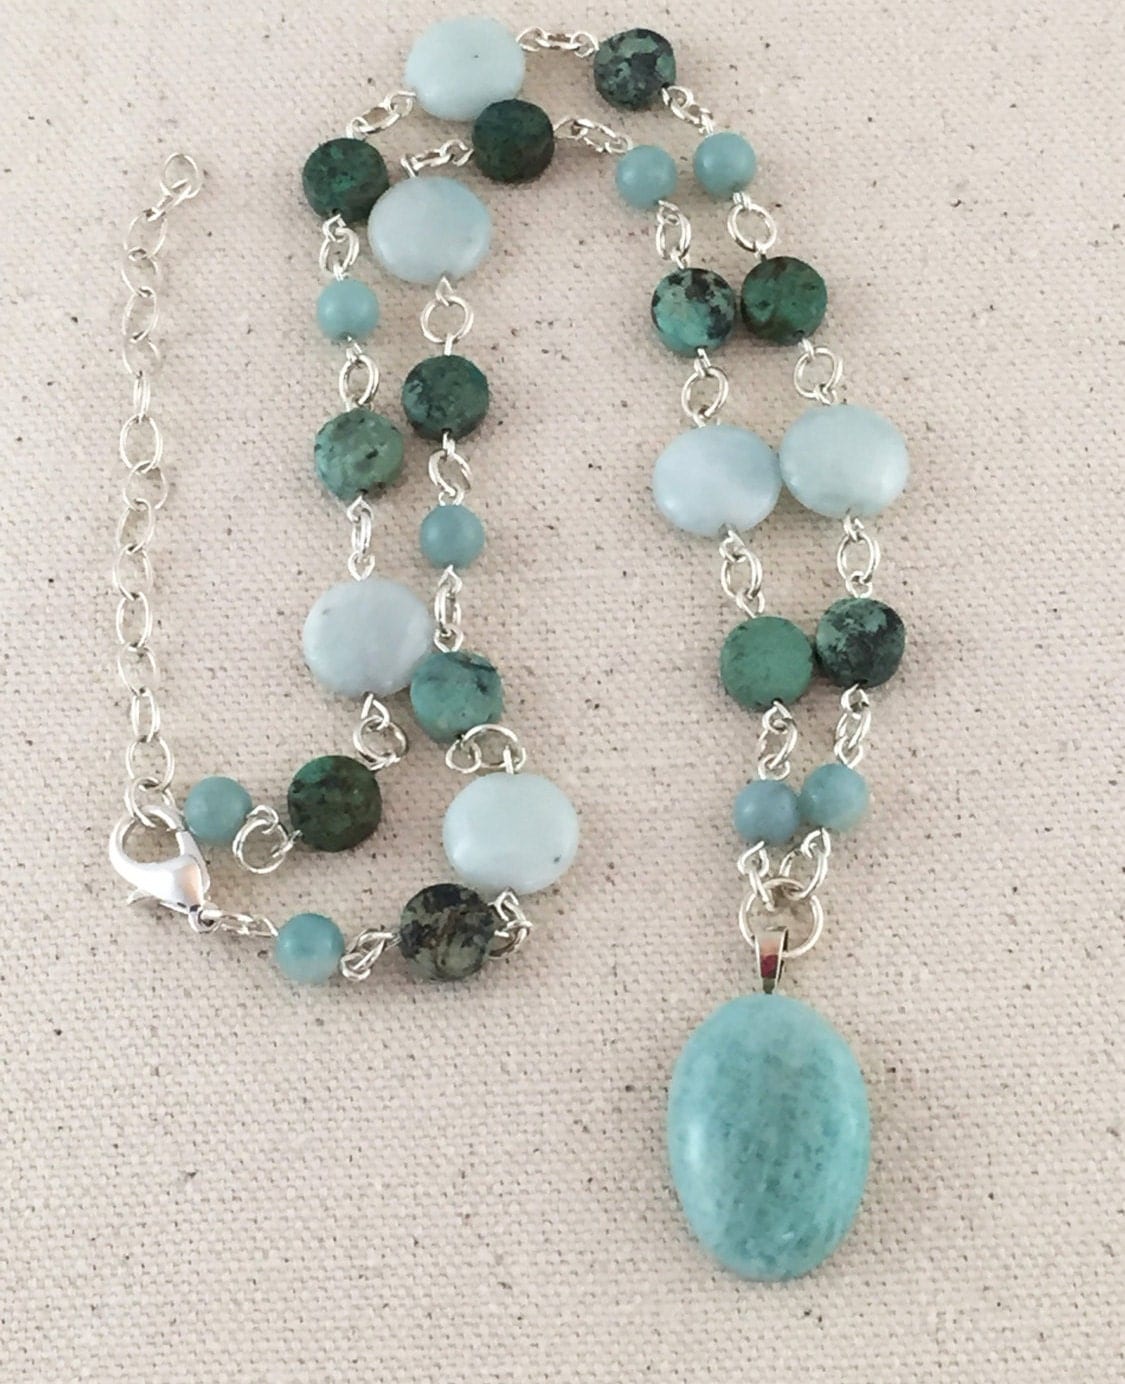 Turquoise Amazonite Pendant Necklace on Beaded Strand of